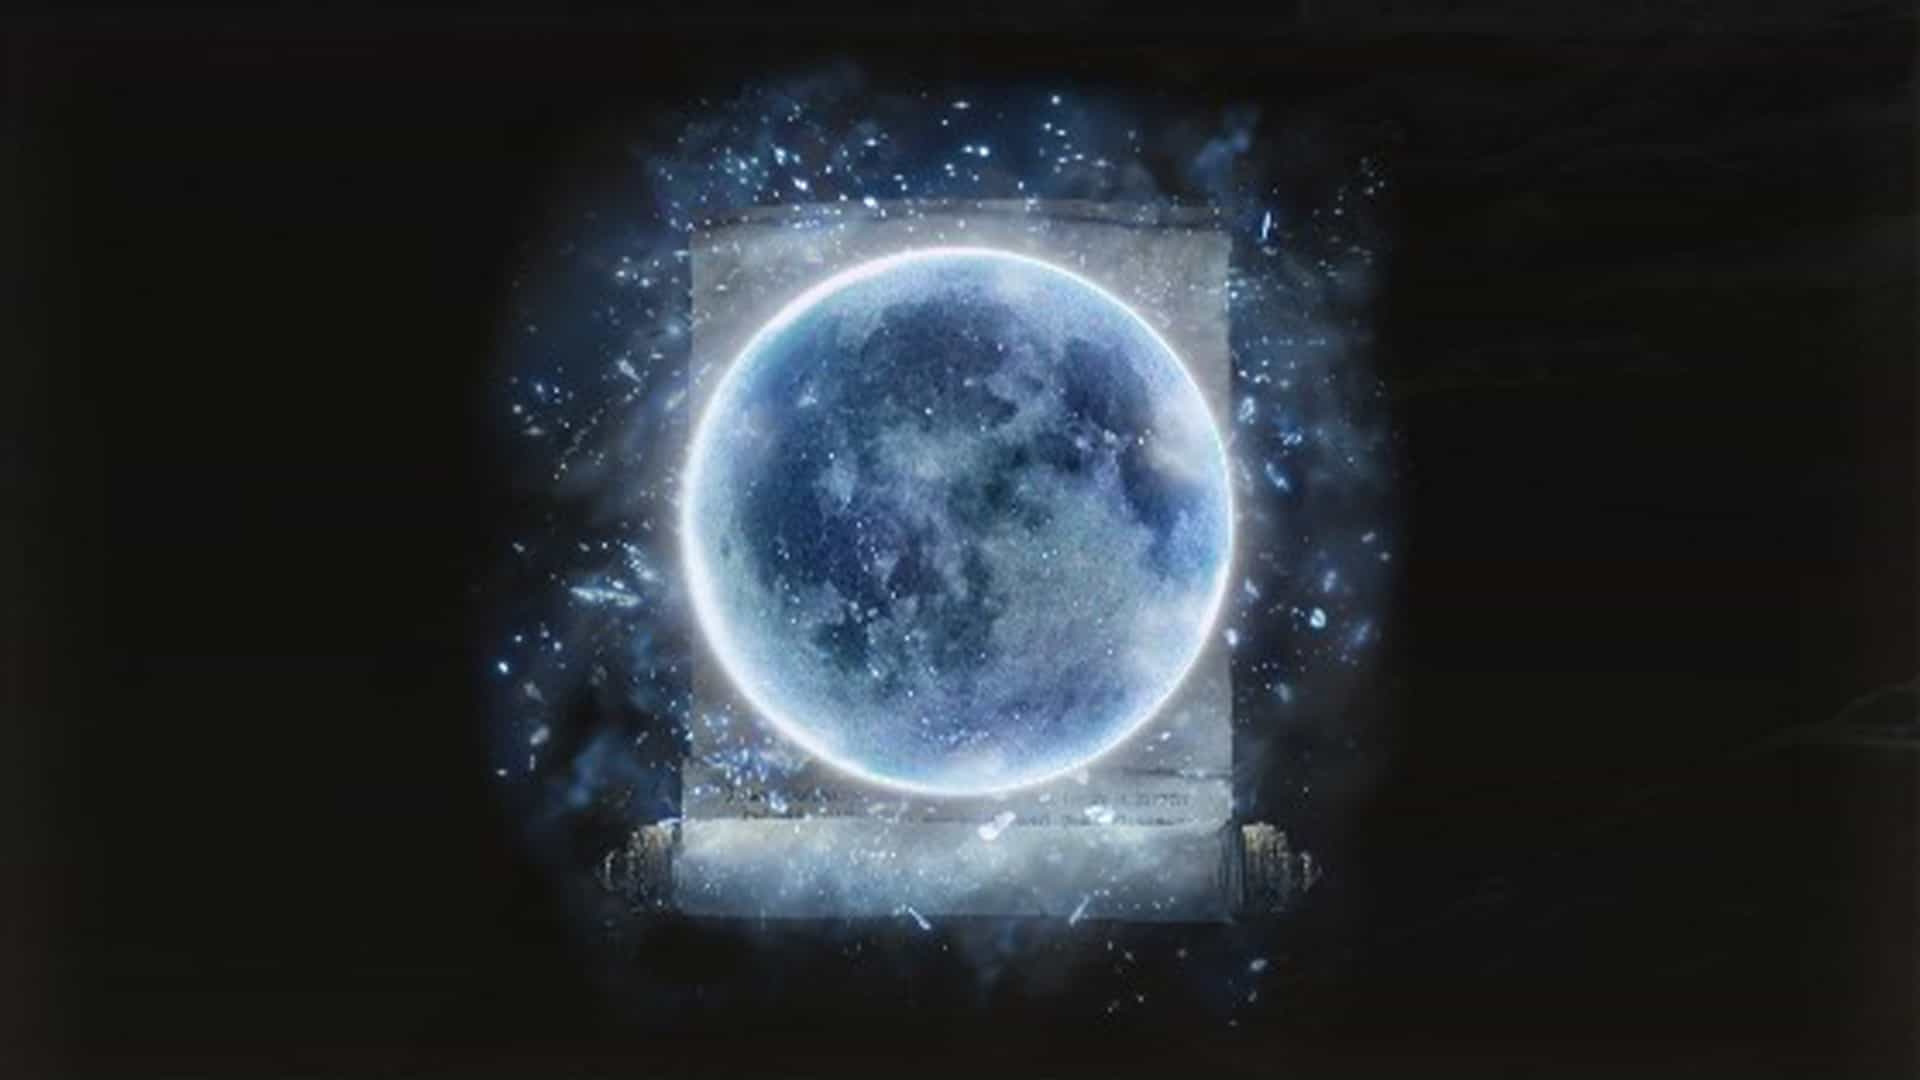 Rannis Dark Moon featured